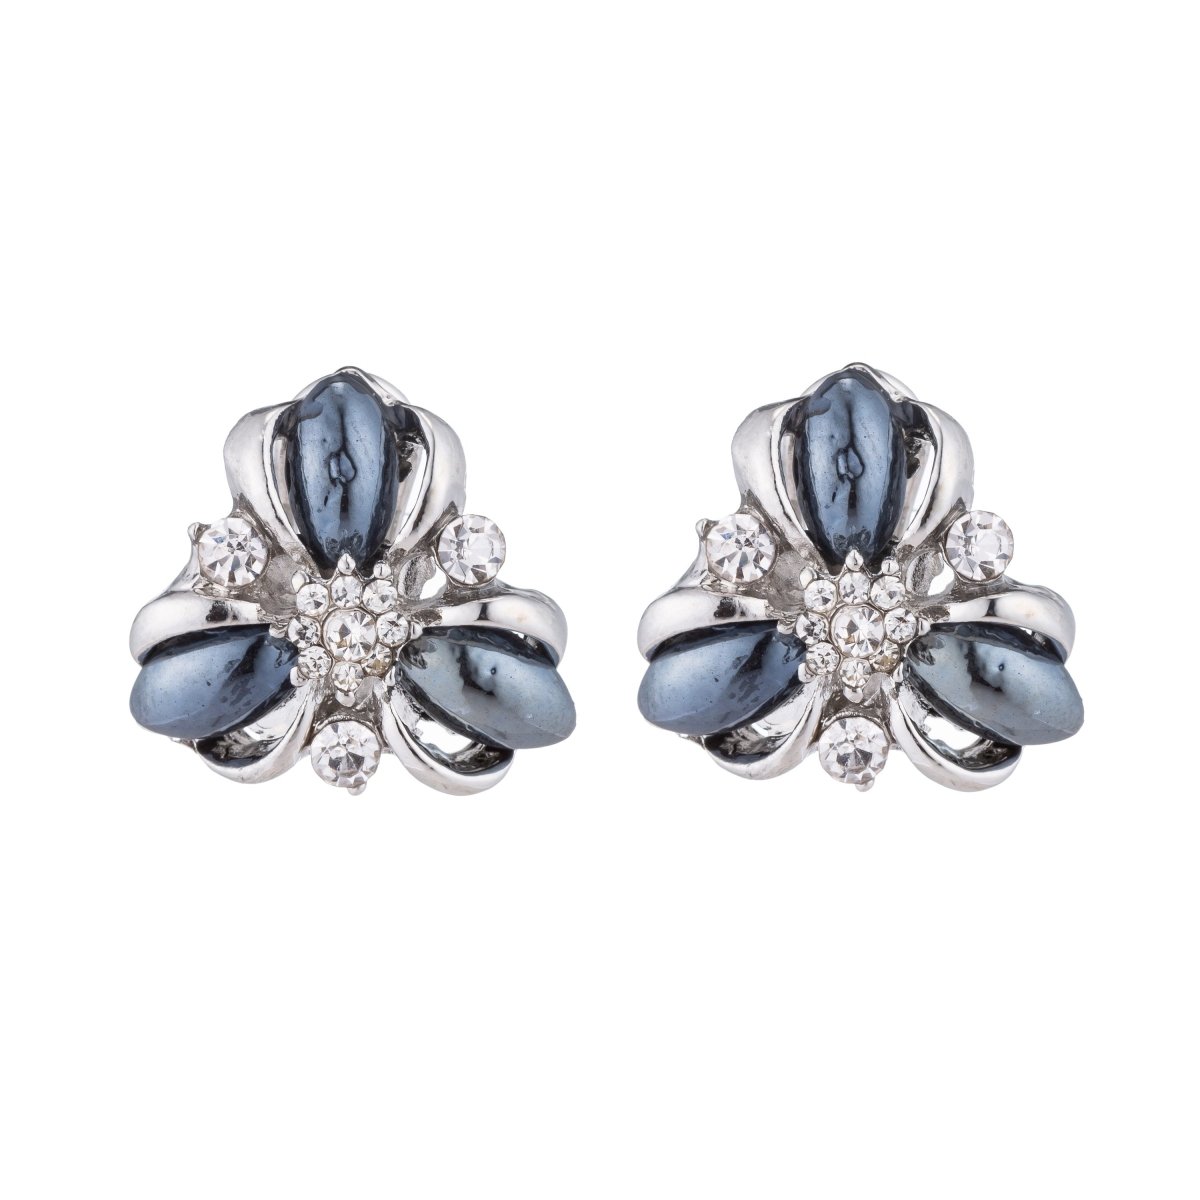 Silver Flower Stud Earrings, Navy Royal Blue Star Gemstone, Snowflake, Austria Crystal Modern Findings, 062918-1235 - DLUXCA